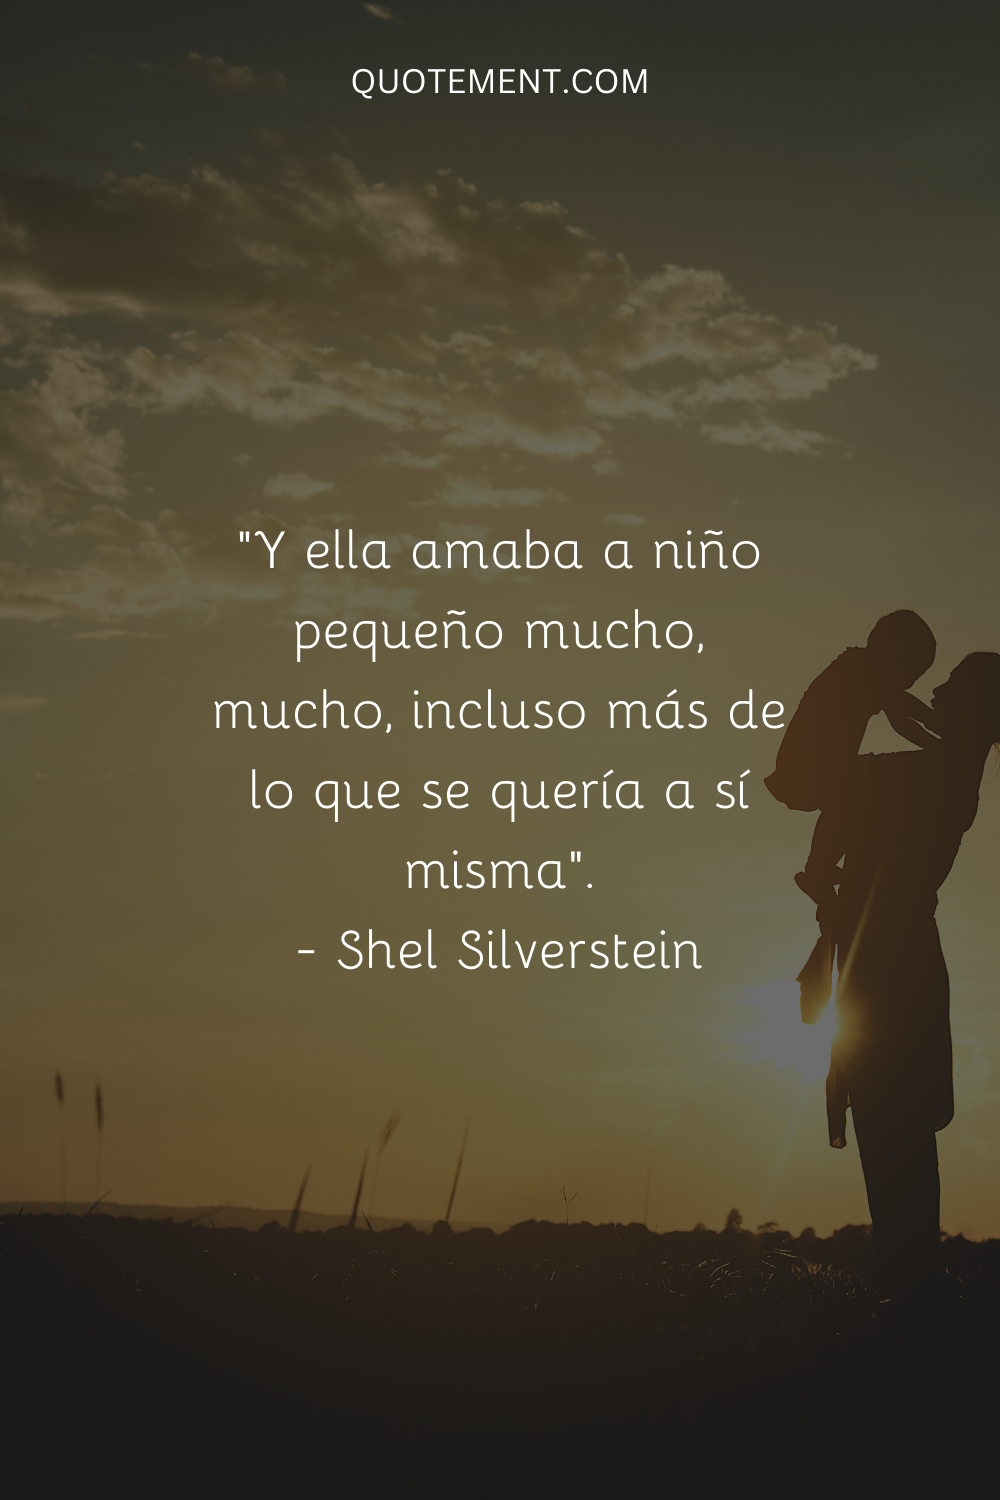 "Y quería mucho, mucho, a un niño pequeño, incluso más de lo que se quería a sí misma". - Shel Silverstein